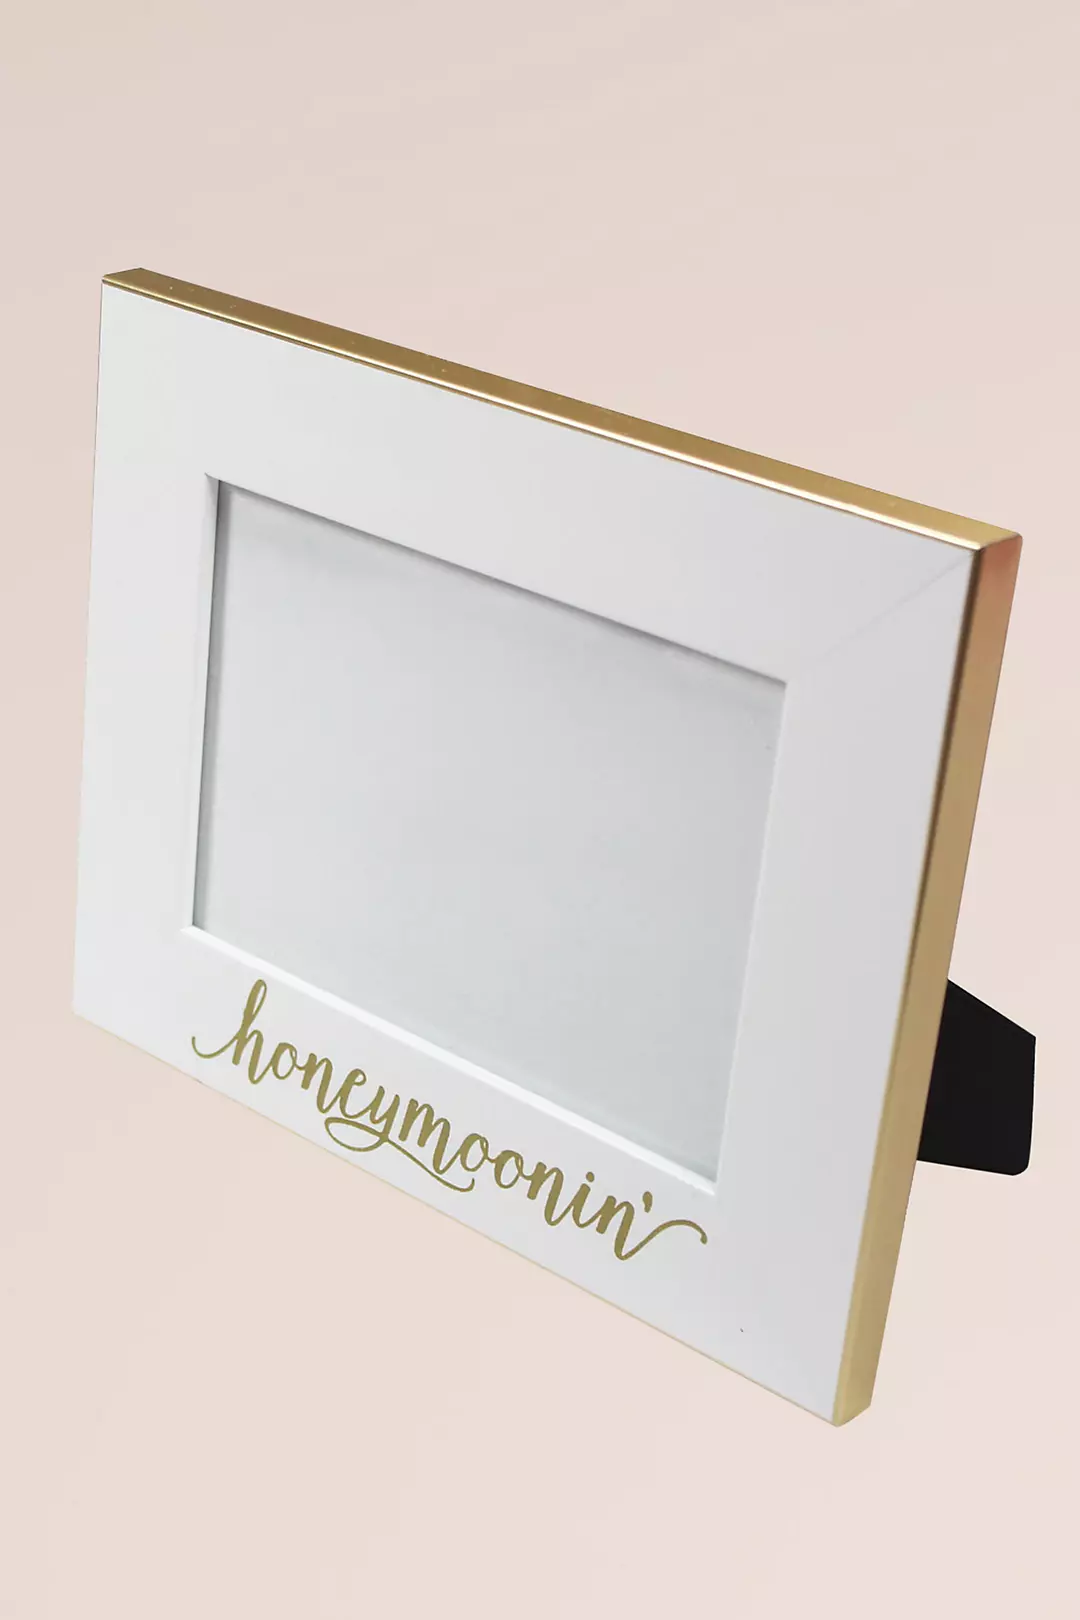 Honeymoonin White and Gold Frame Image 2